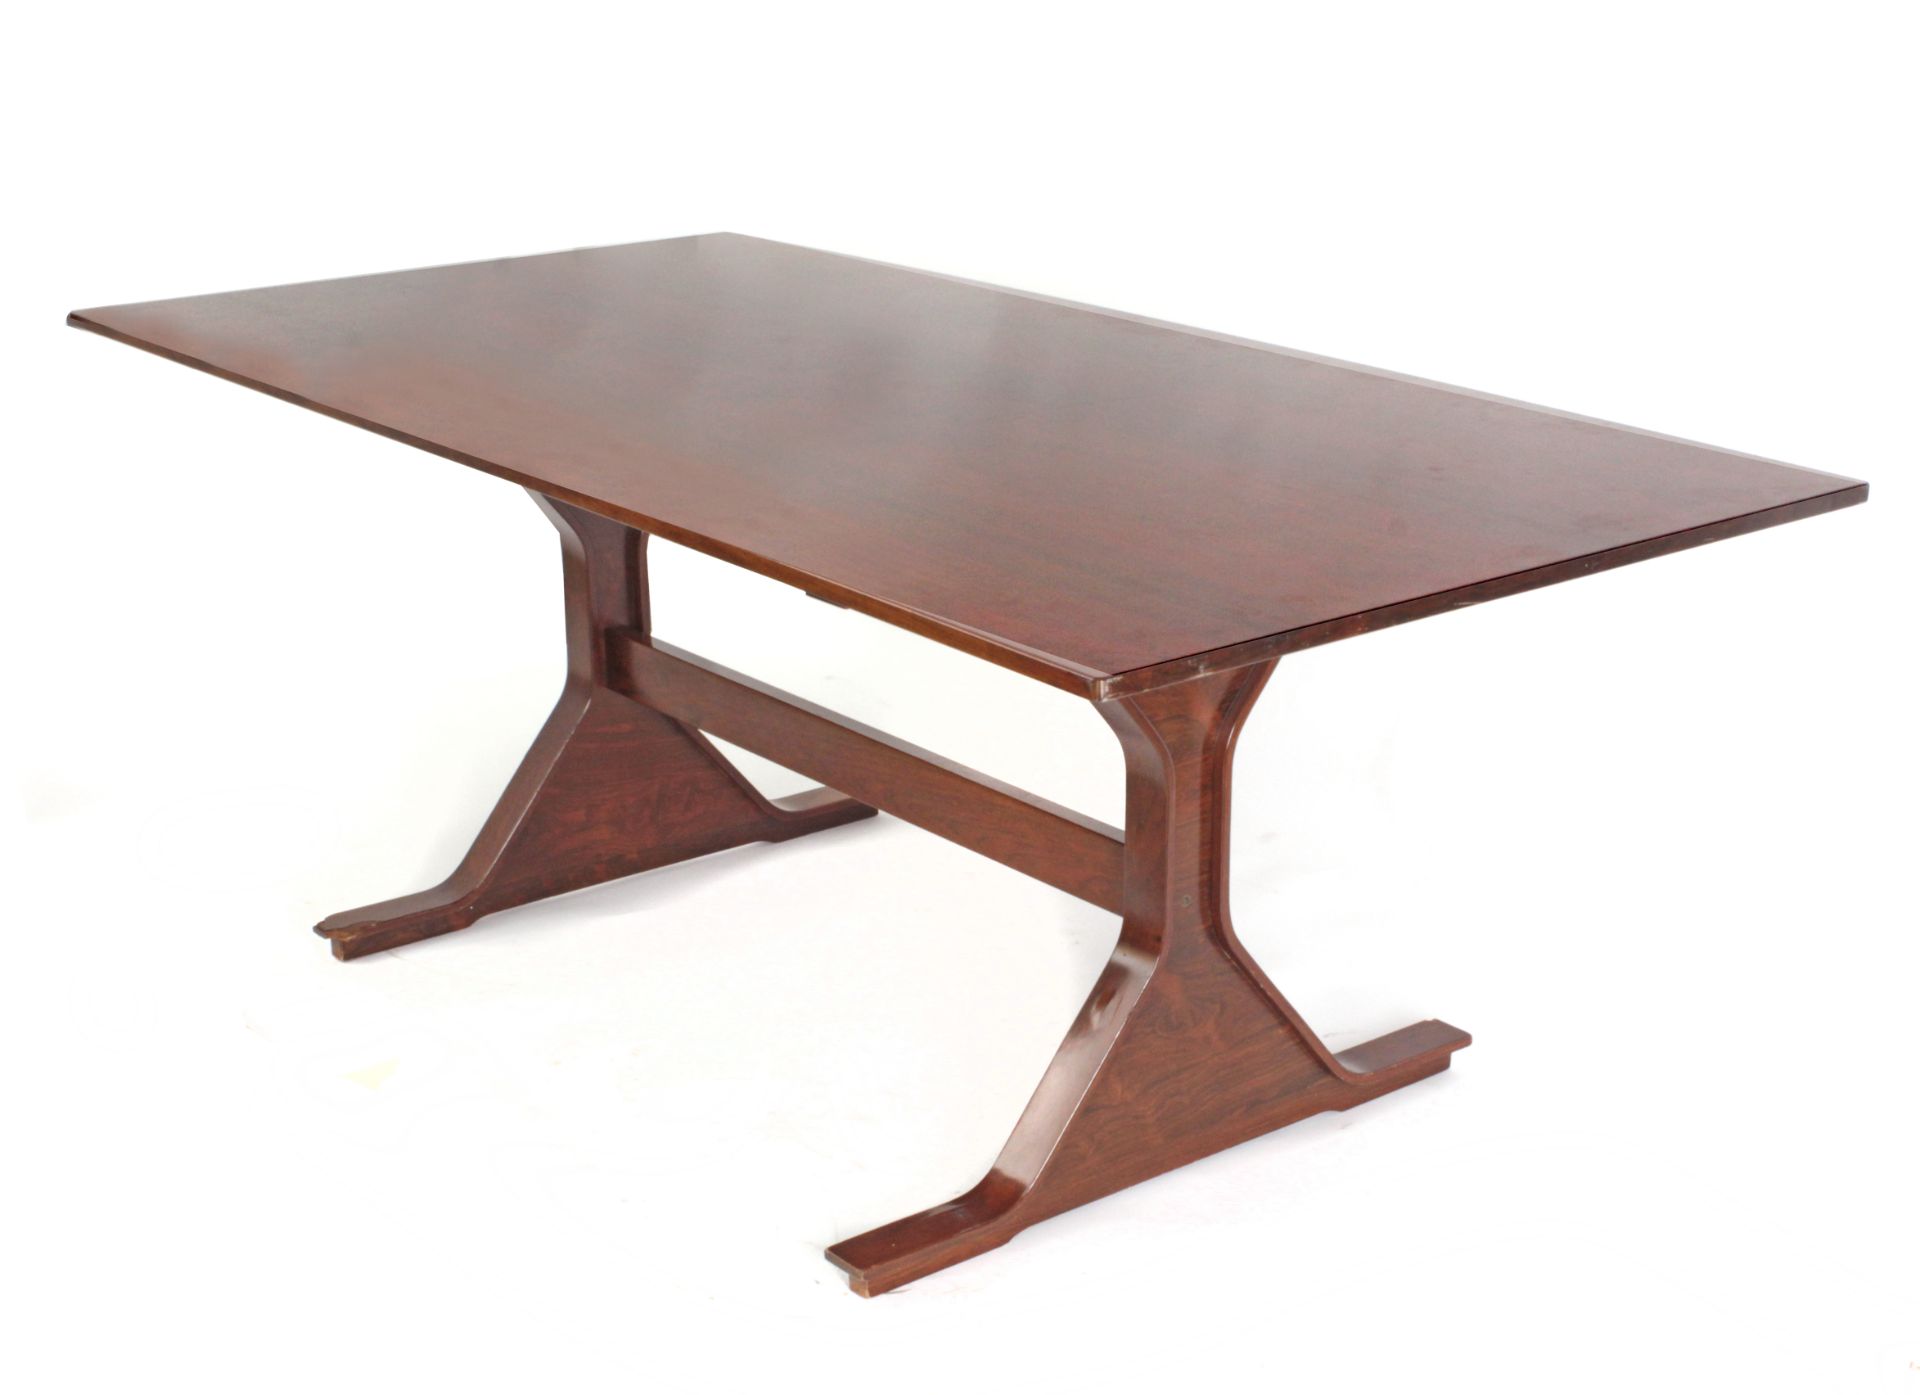 Gianfranco Frattini for Bernini circa 1960-1969. A rosewood centre table